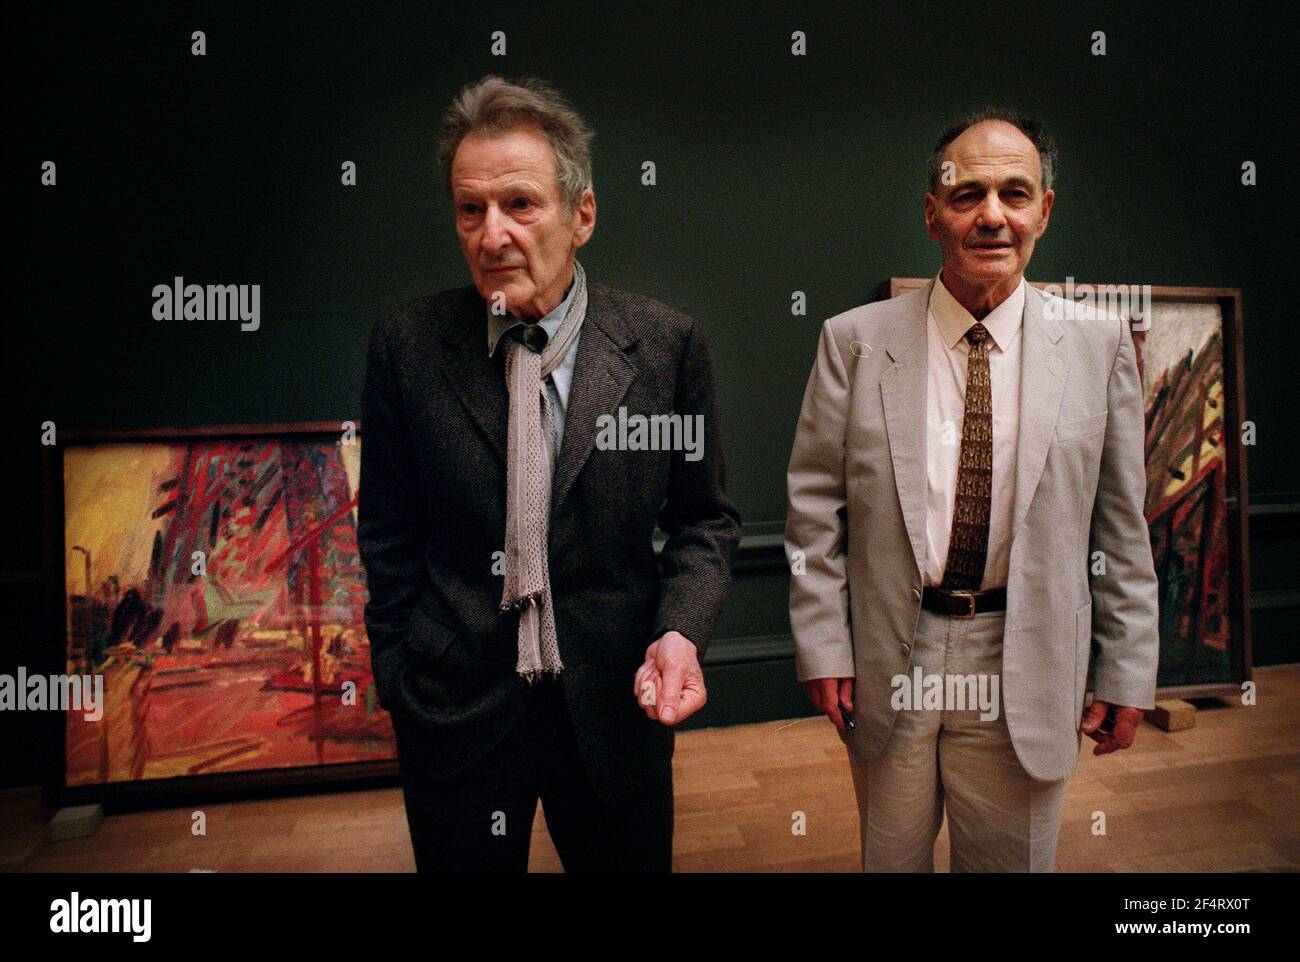 Lucien Freud reunión con Frank Auerbach como la pintura de Auerbach se cuelgan en la acadamia real. 5/9/01 pilston Foto de stock